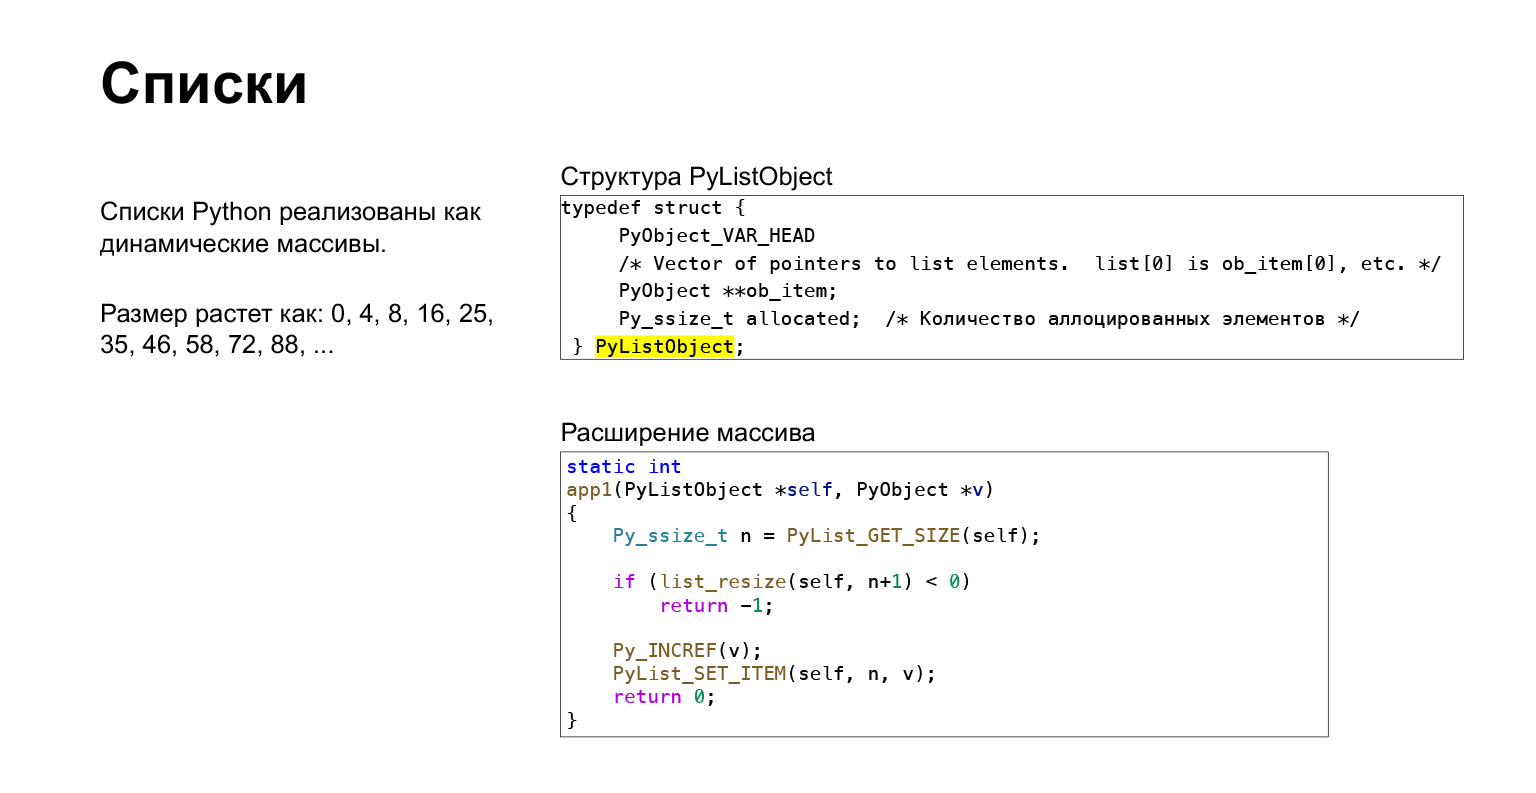 Устройство CPython. Доклад Яндекса - 31